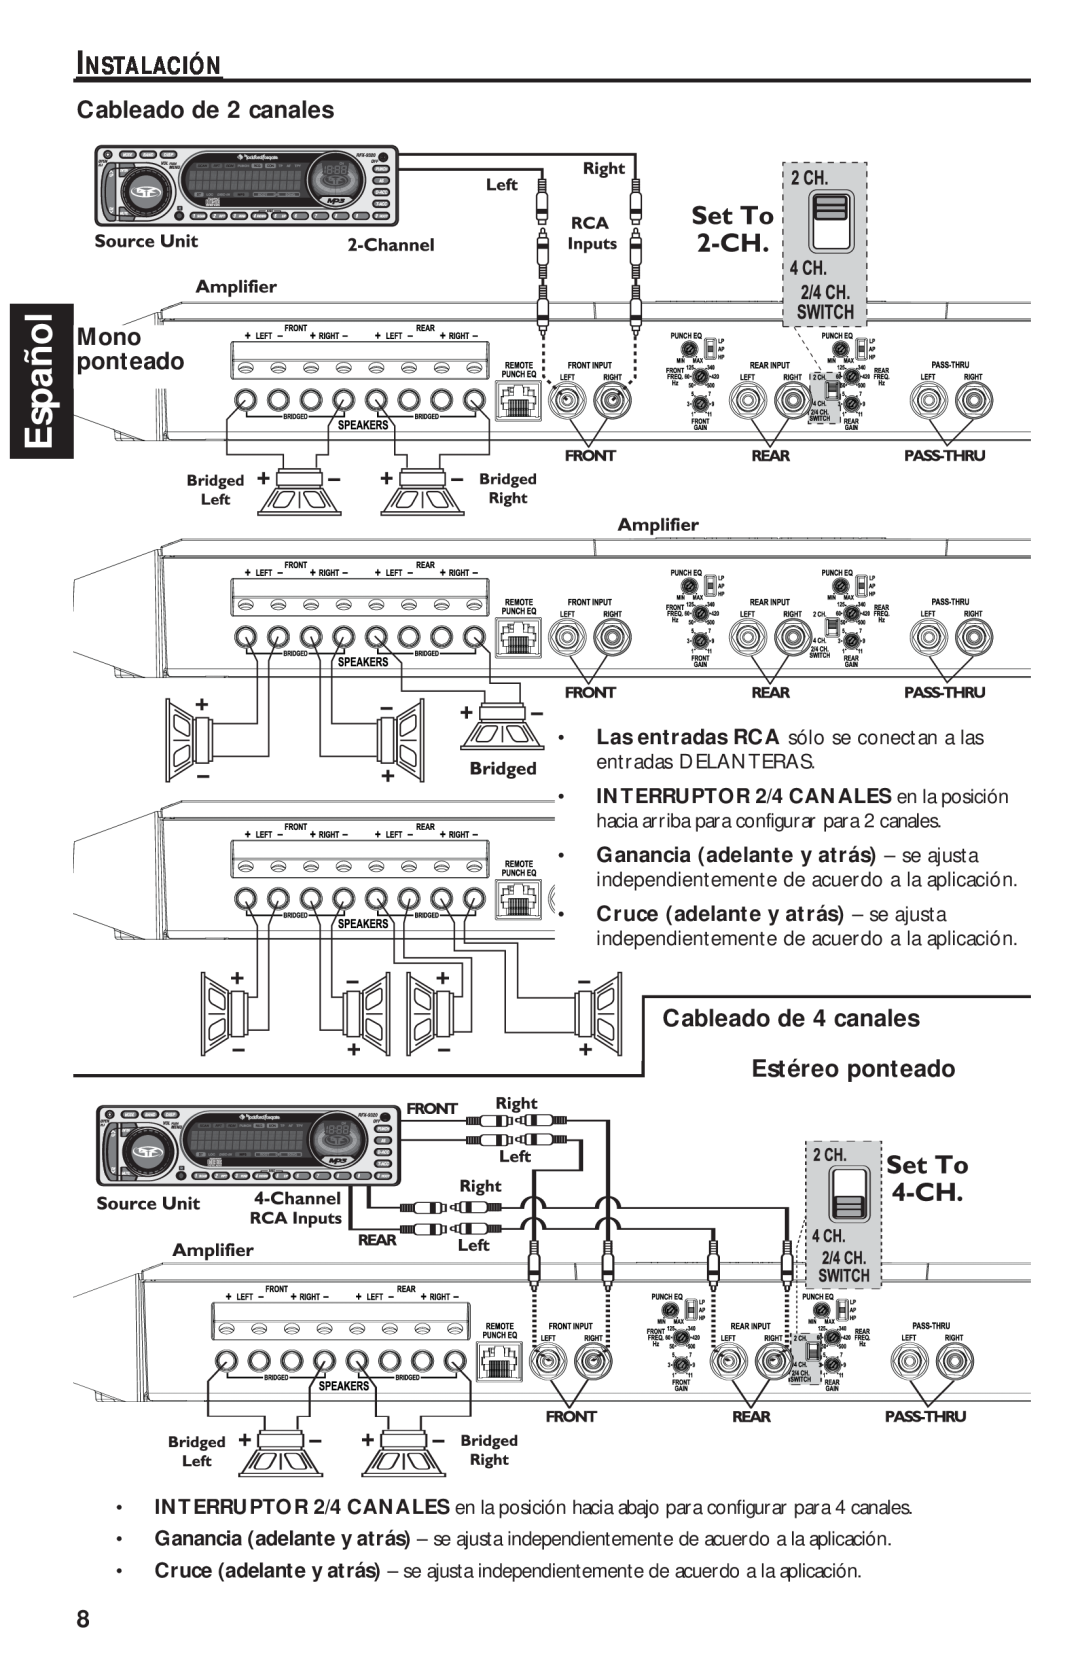 Rockford Fosgate T1000-4 Español, Instalación, Mono, Cableado de 4 canales Estéreo ponteado, Cableado de 2 canales 